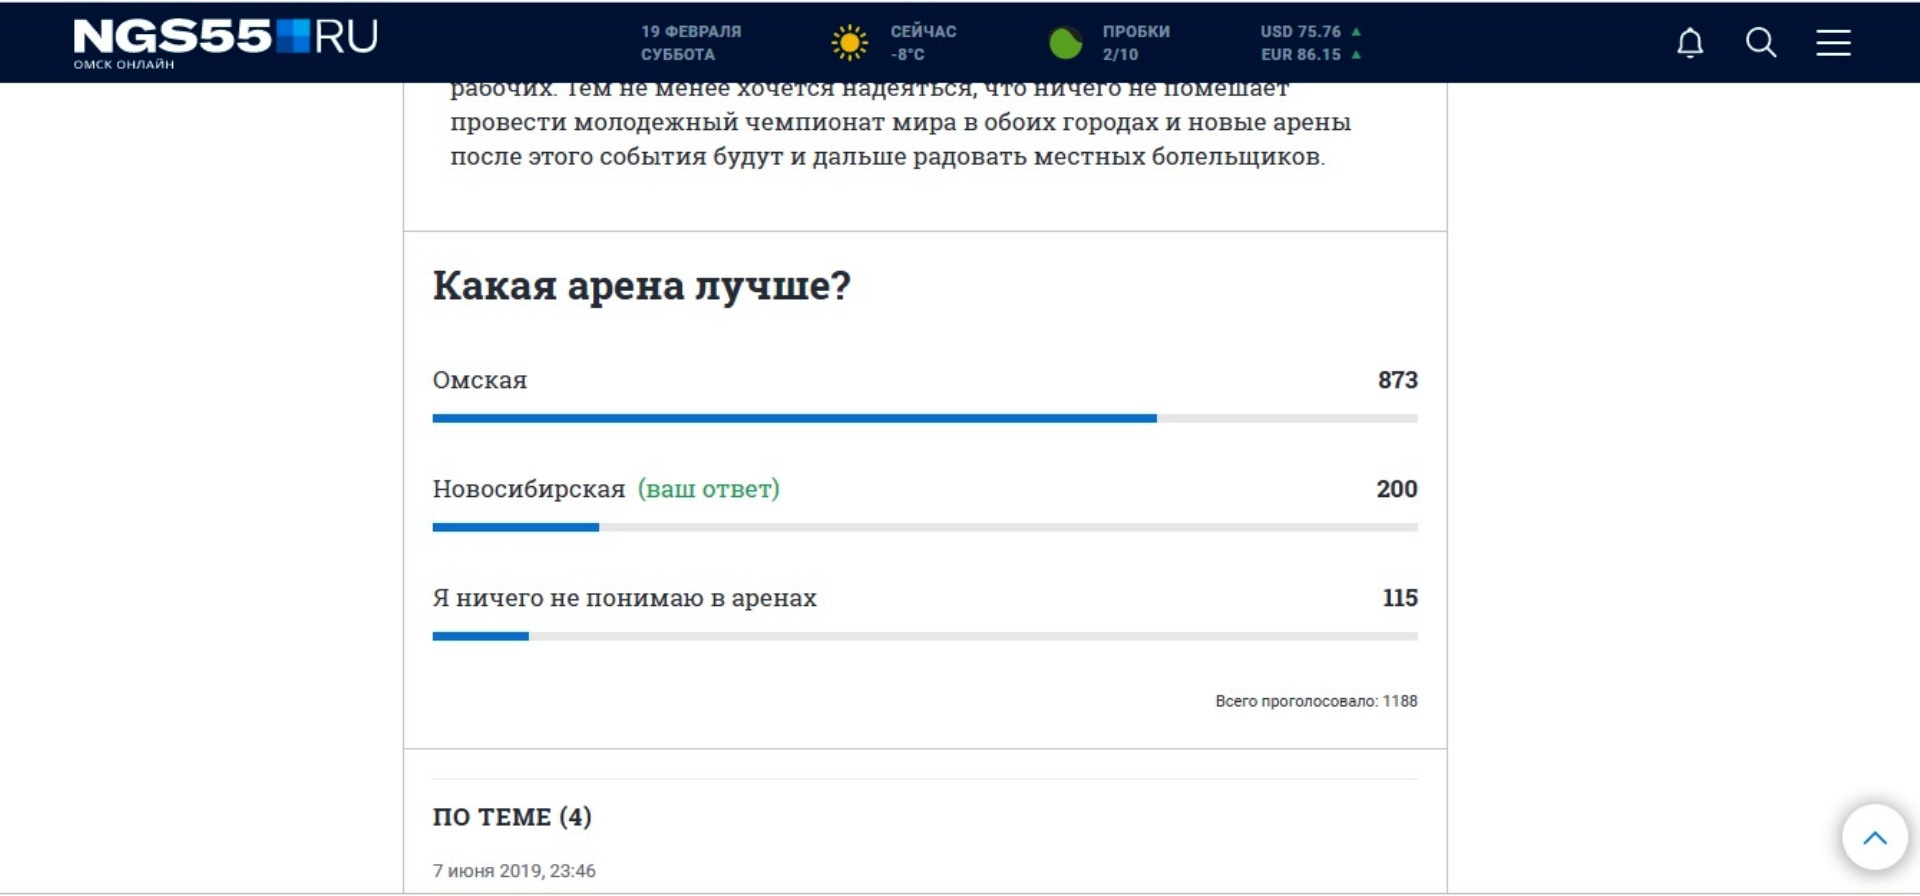 Итоги голосования в Омске...